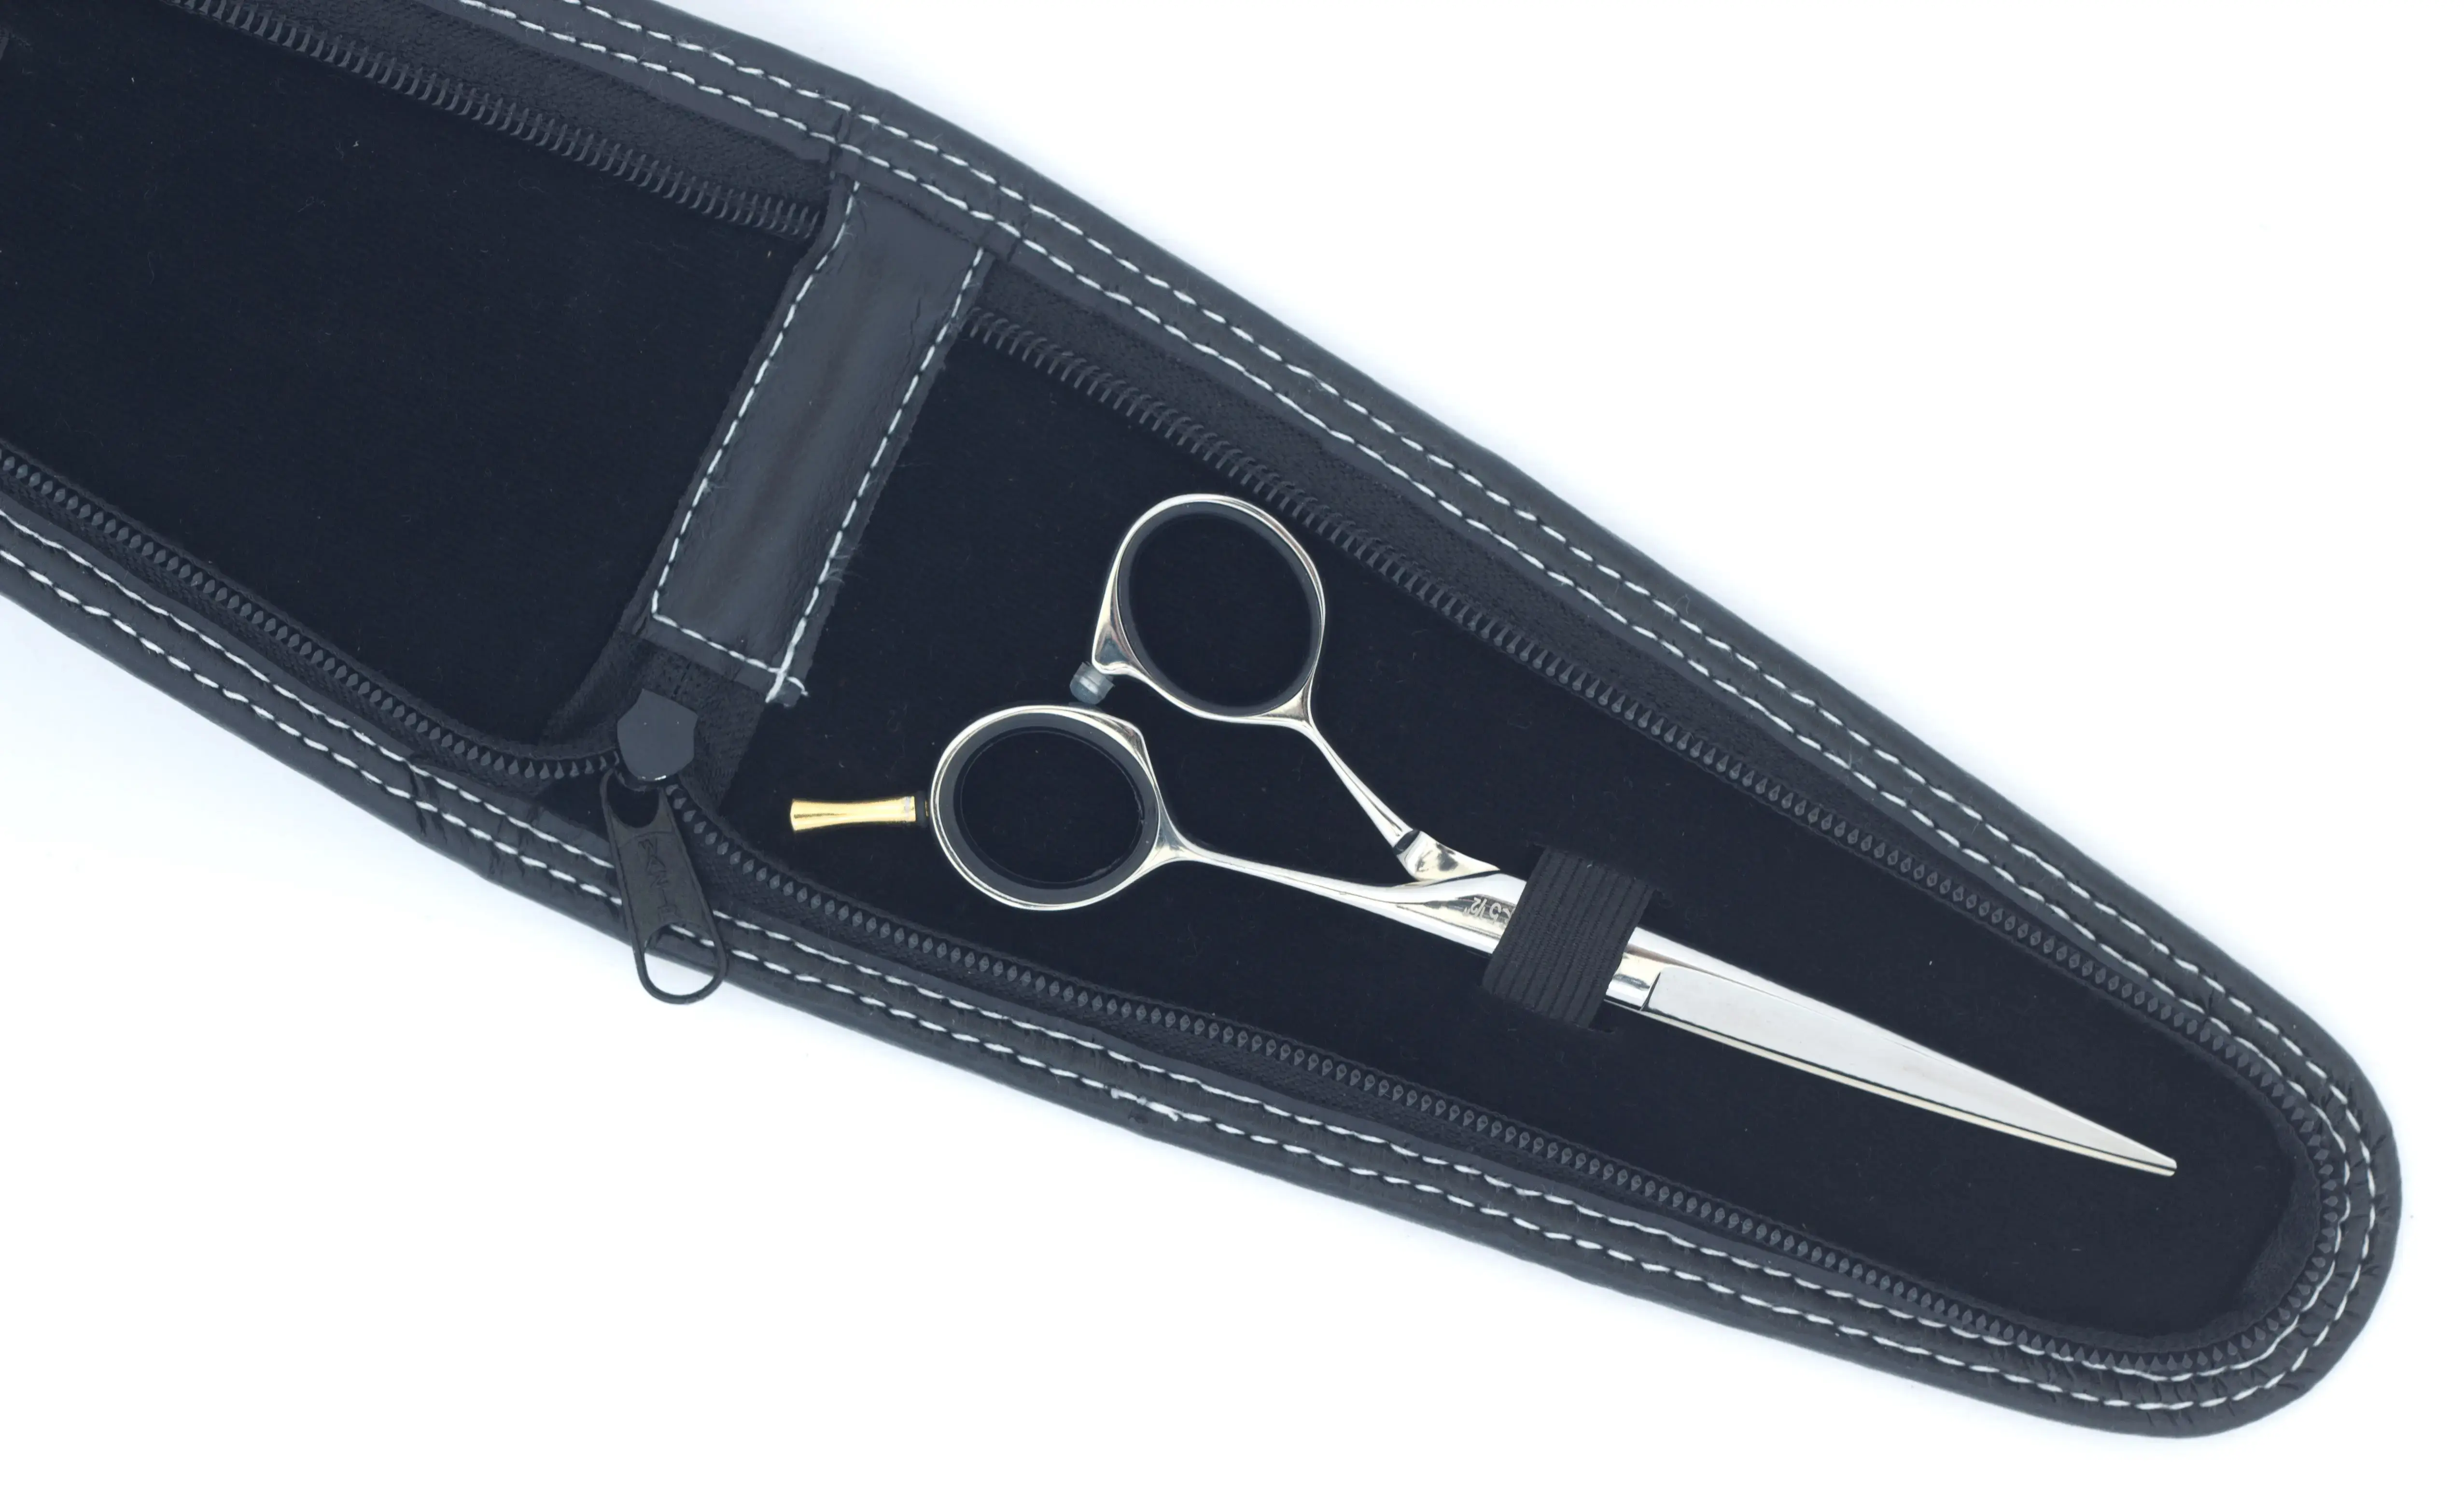 Excellent leatherette scissors case, 2 compartments